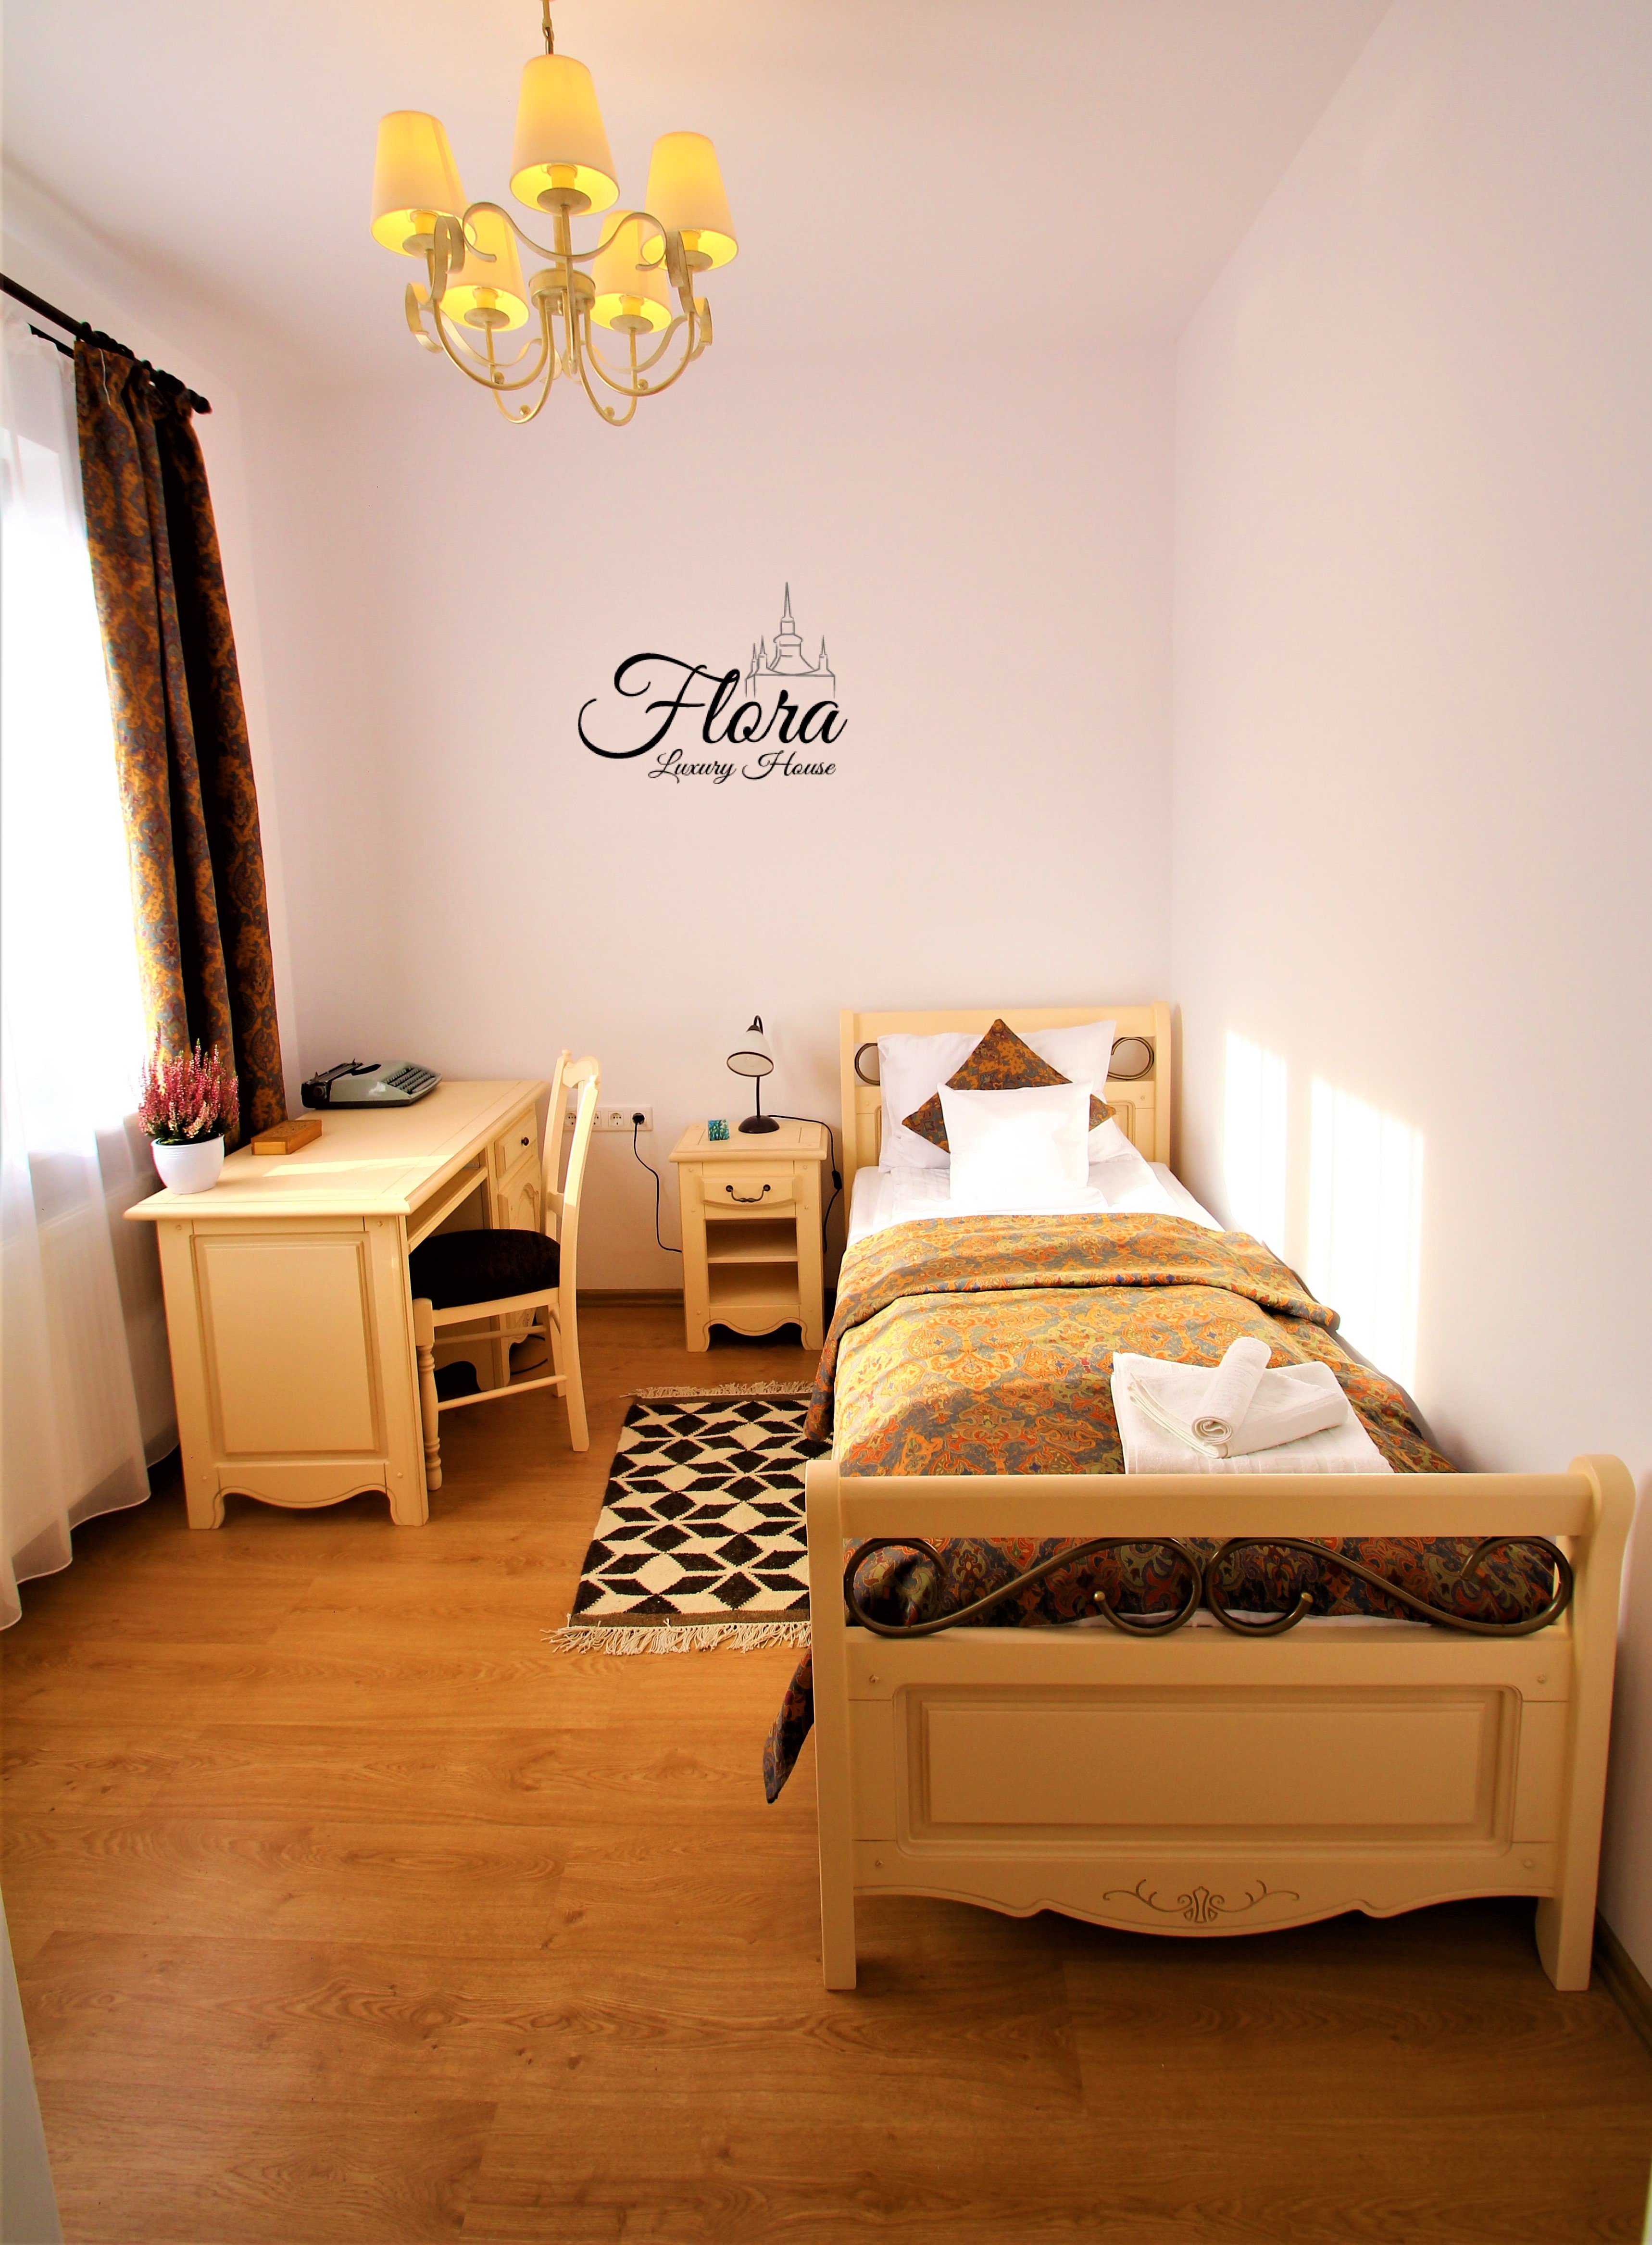 Suita cu doua dormitoare - Cazare in Sighisoara 3 persoane - Flora Luxury House, Sighisoara 5